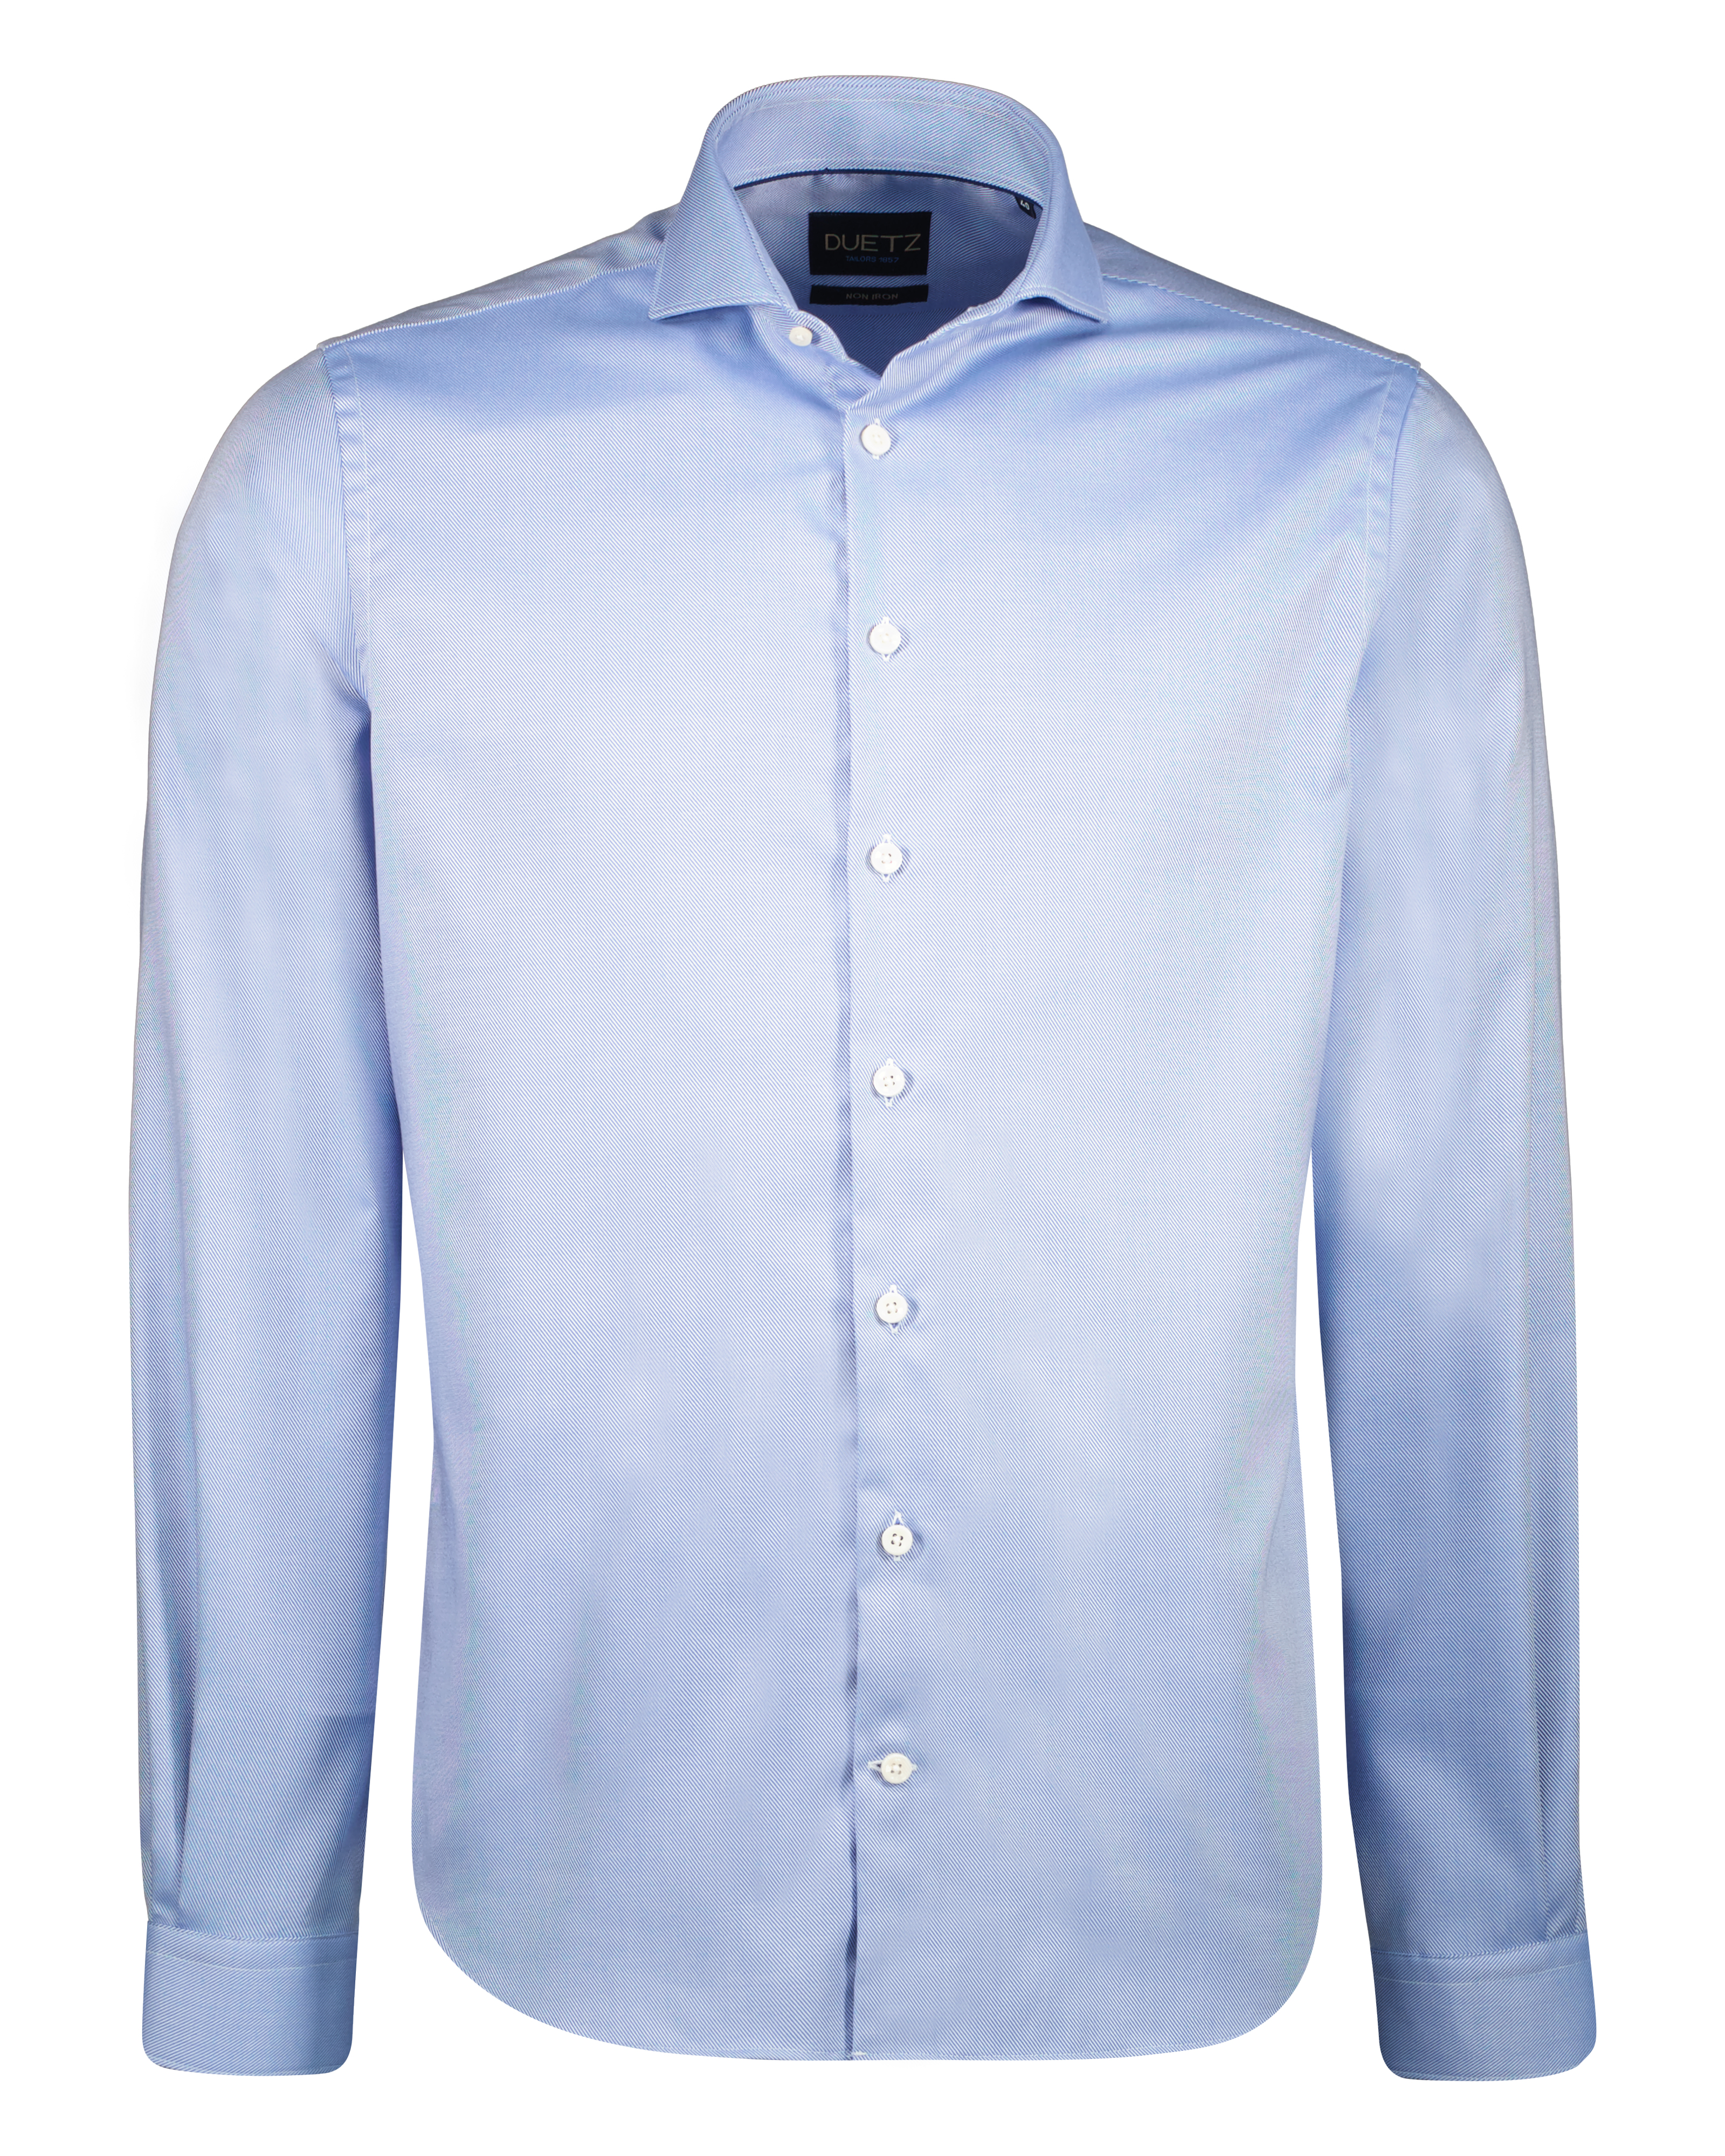 Duetz 1857 Widespread Overhemd met Knoop Middenblauw